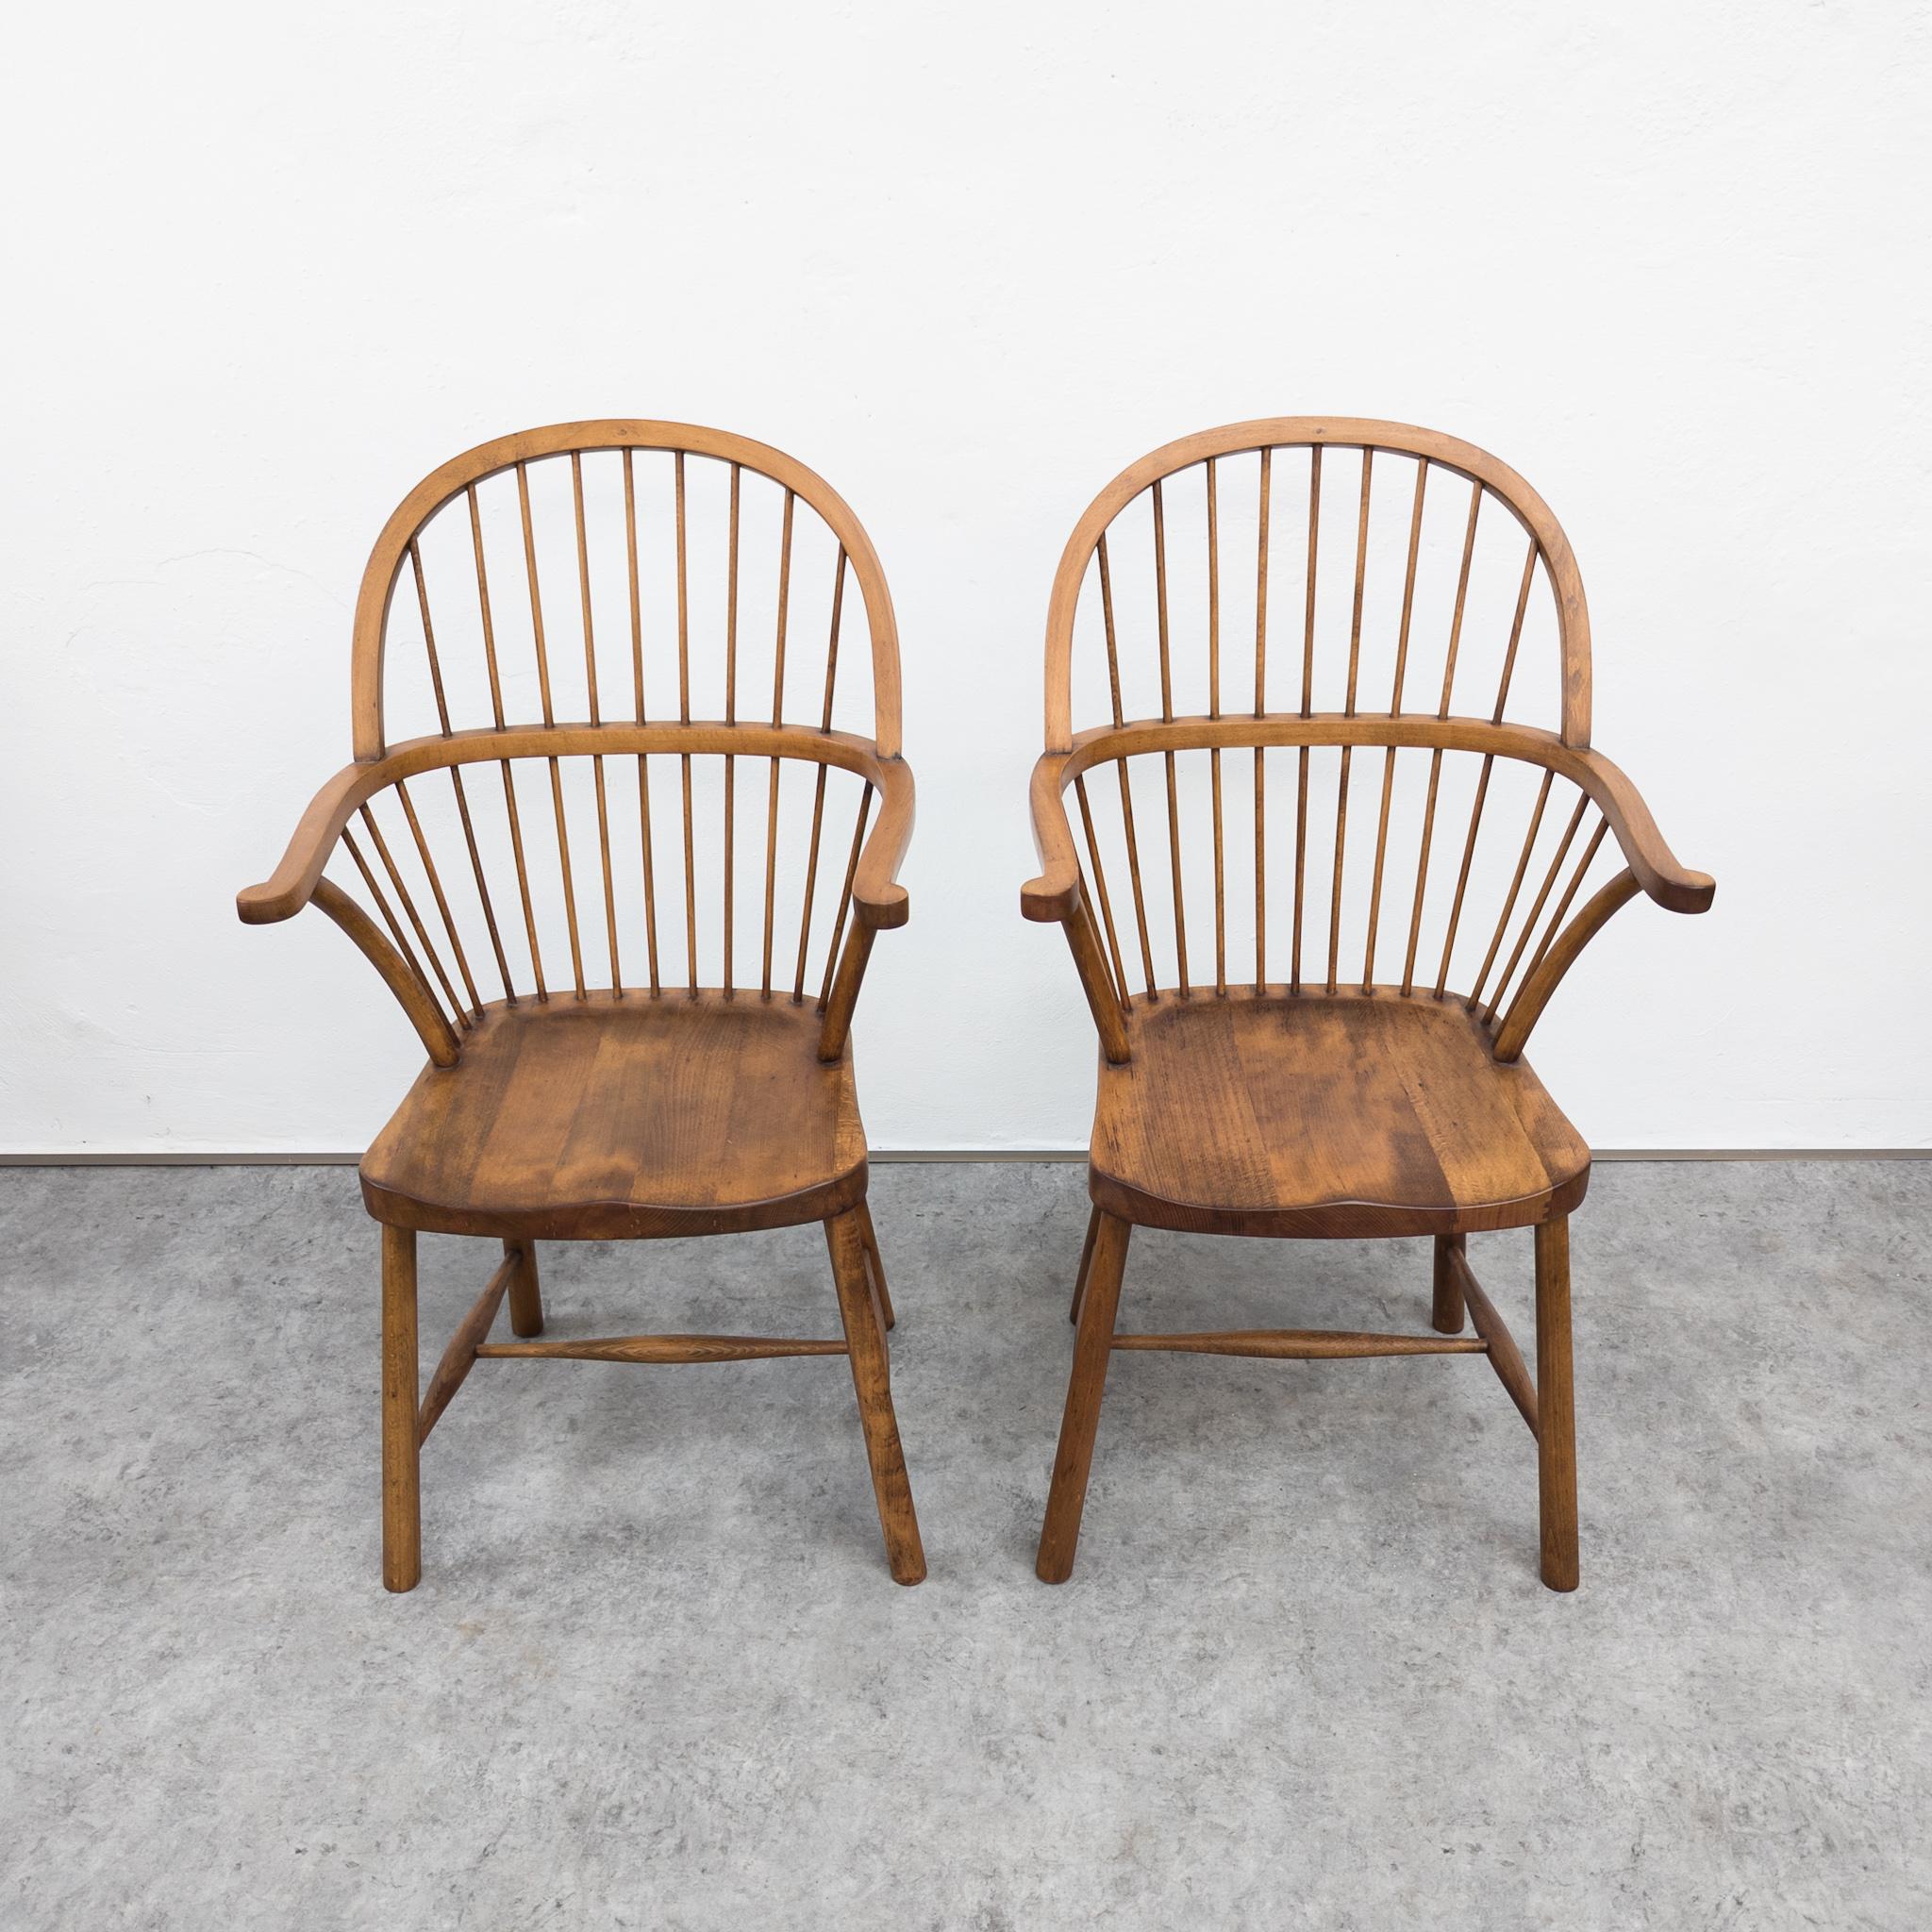 Äußerst seltene Buchenholzstühle im Windsor-Stil von Loos Adolf (1870-1933), hergestellt von Gebrüder Thonet. Gestempelt mit der Marke des Unternehmens. Die Urheberschaft wird A. Loos im Jahr 1903 zugeschrieben (Stühle, die er z.B. in seiner eigenen